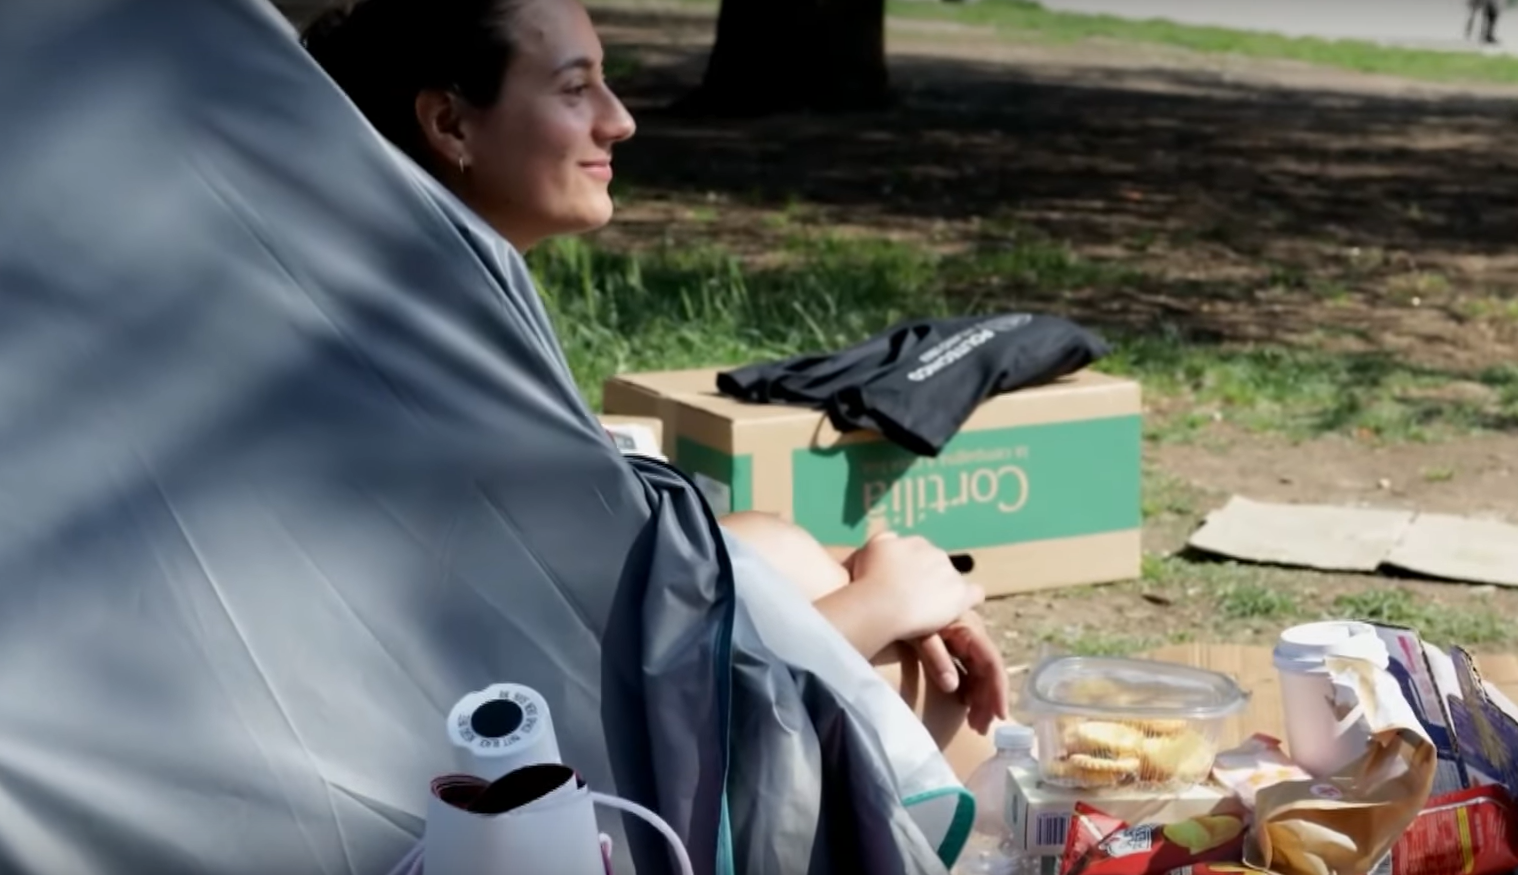 una studentessa dentro a una tenda in un parco, di fronte alla tenda si vedono un thermos e del civo